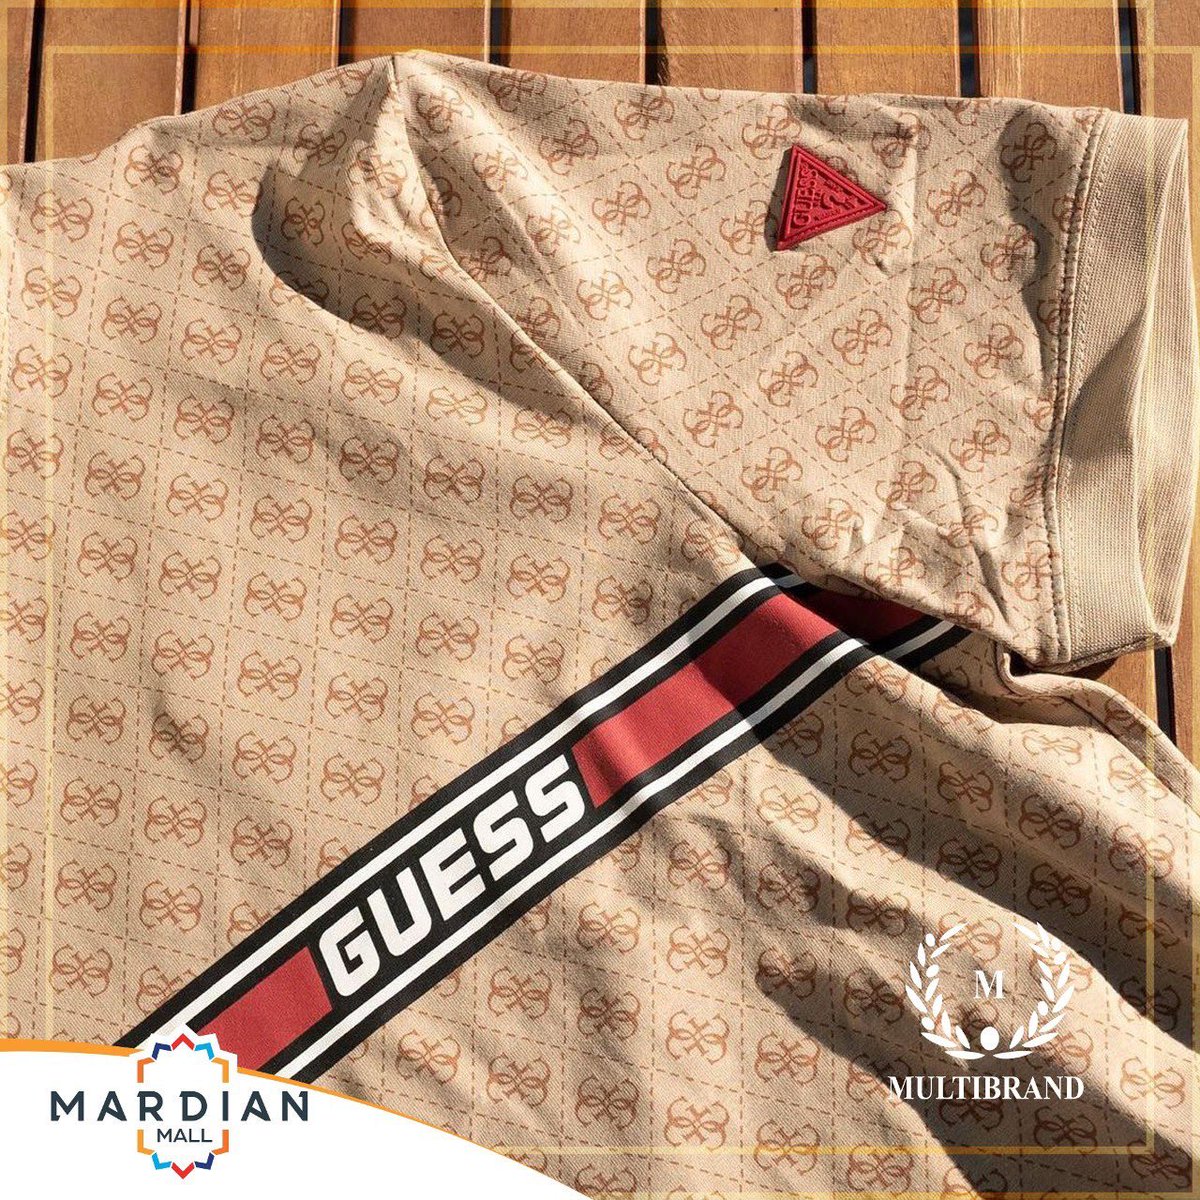 Multibrand ile birbirinden farklı markaların büyülü dünyasına adım atın!🤩

#MardianMall #Mardian #Mardin #multibrand